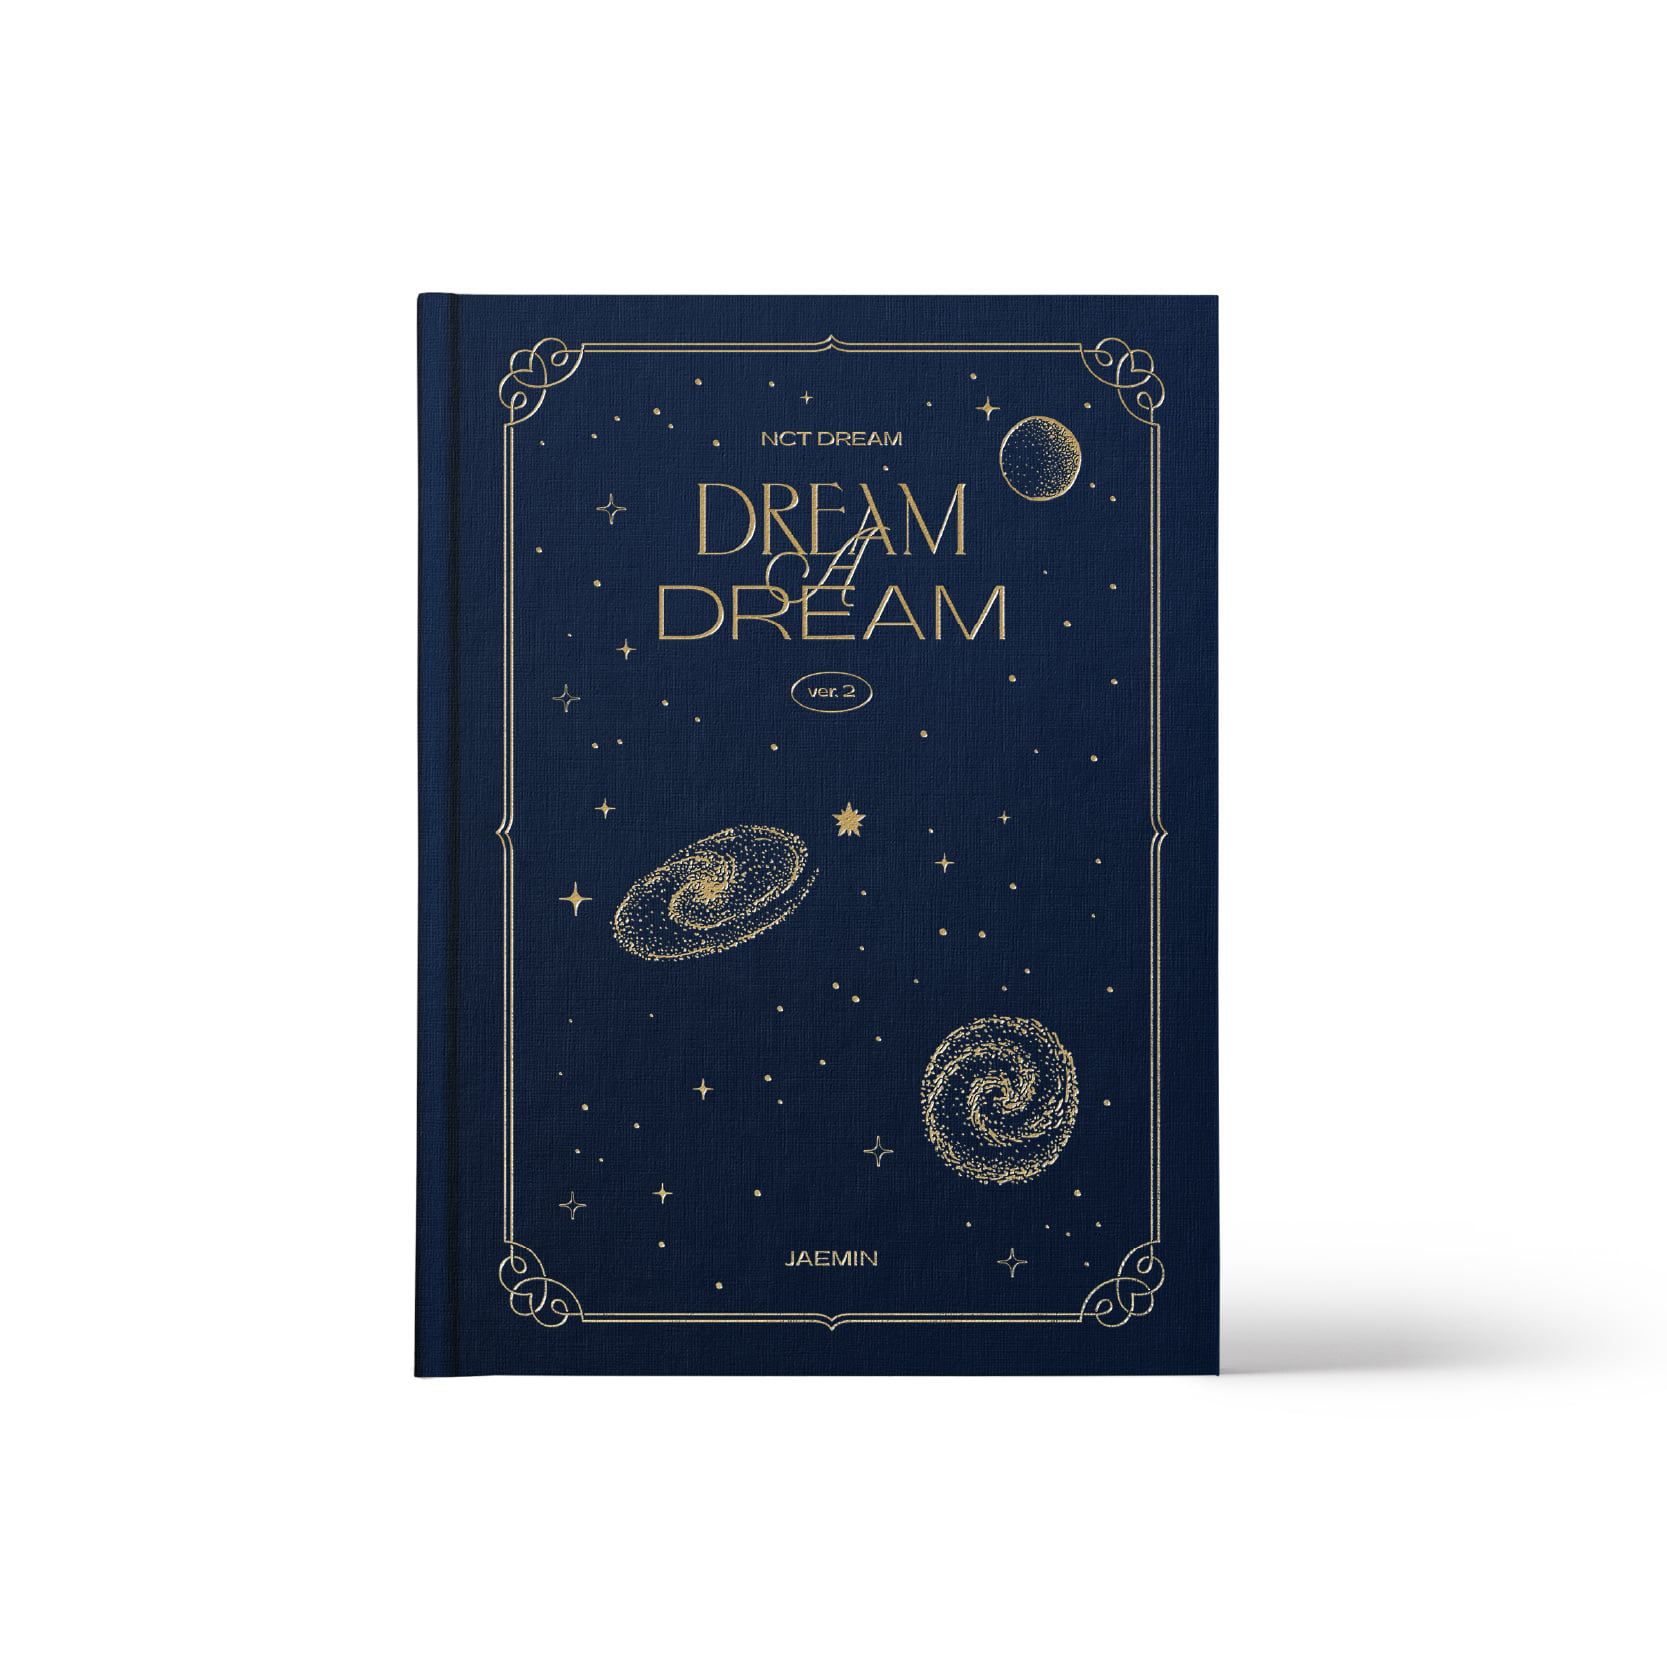 [PRE-ORDER] NCT DREAM - [JAEMIN] NCT DREAM PHOTO BOOK [DREAM A DREAM ver.2]케이팝스토어(kpop store)